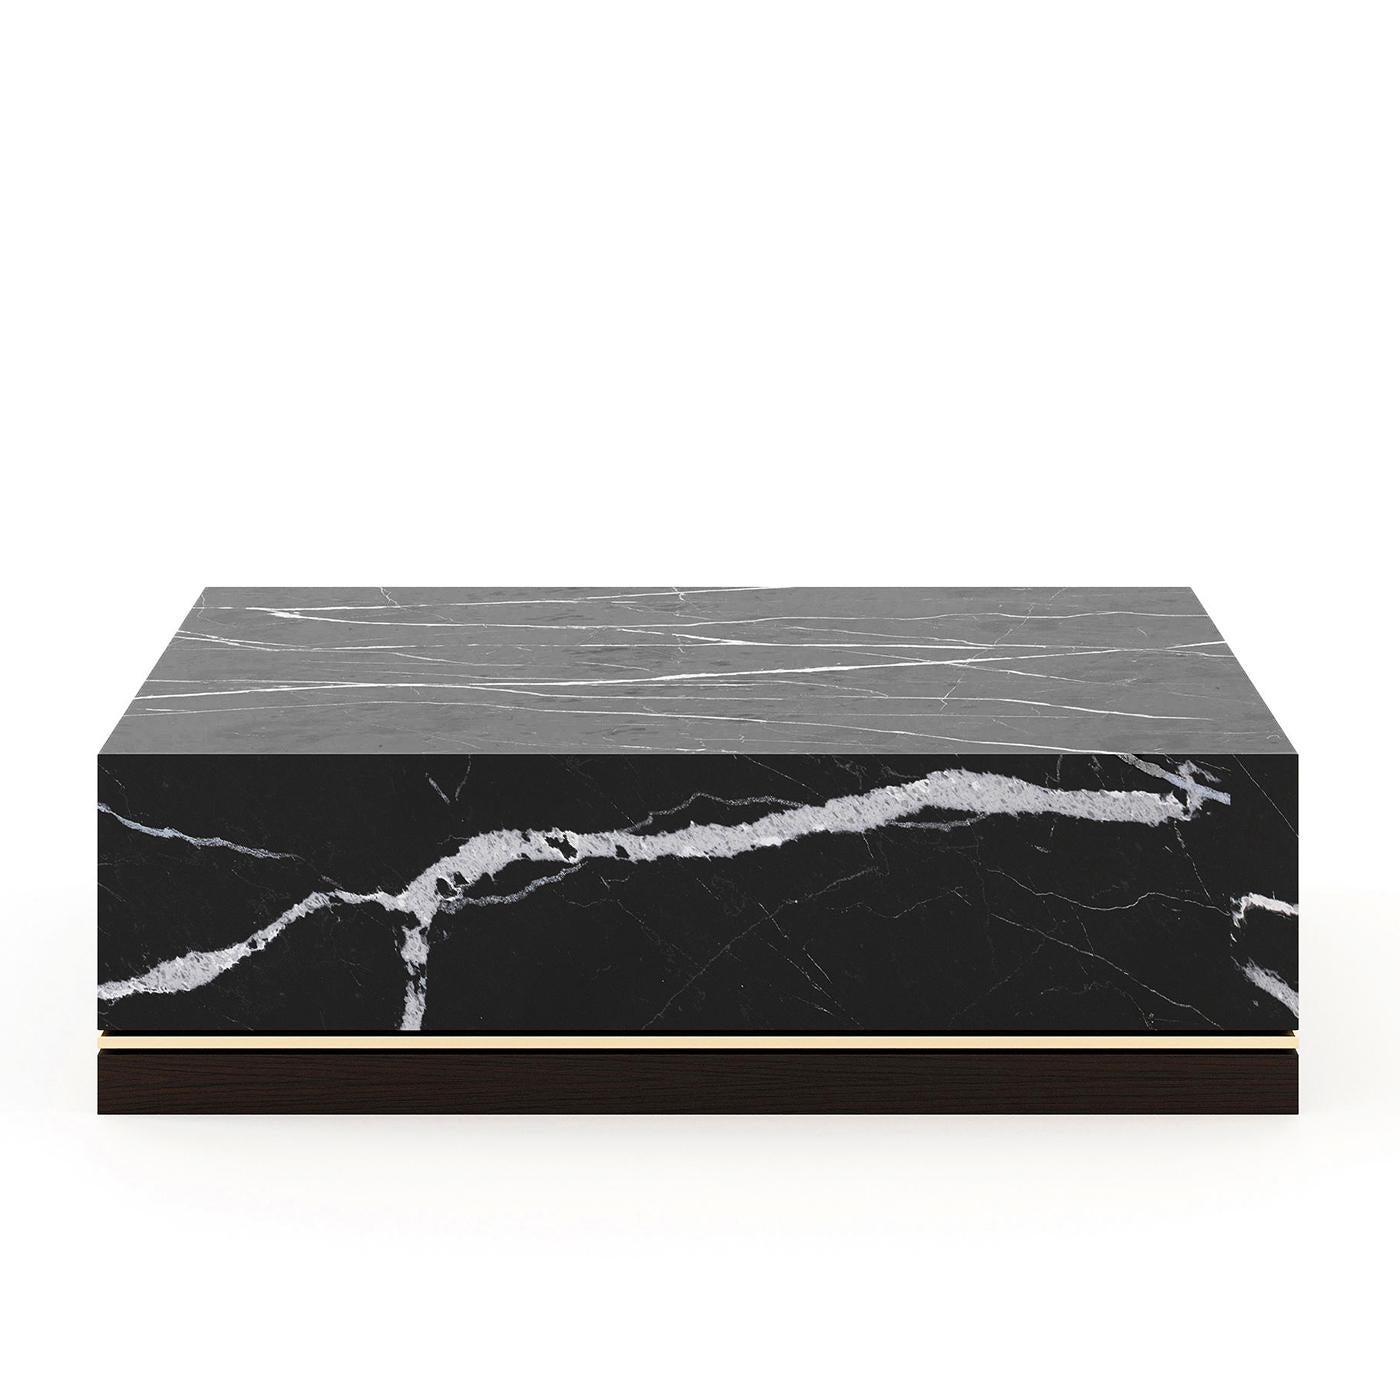 Table basse Adamo avec structure en bois et
avec des plaques en marbre noir. Avec base en chêne
en finition mate en chêne fumé et en finition polie
garniture en acier inoxydable en finition dorée.